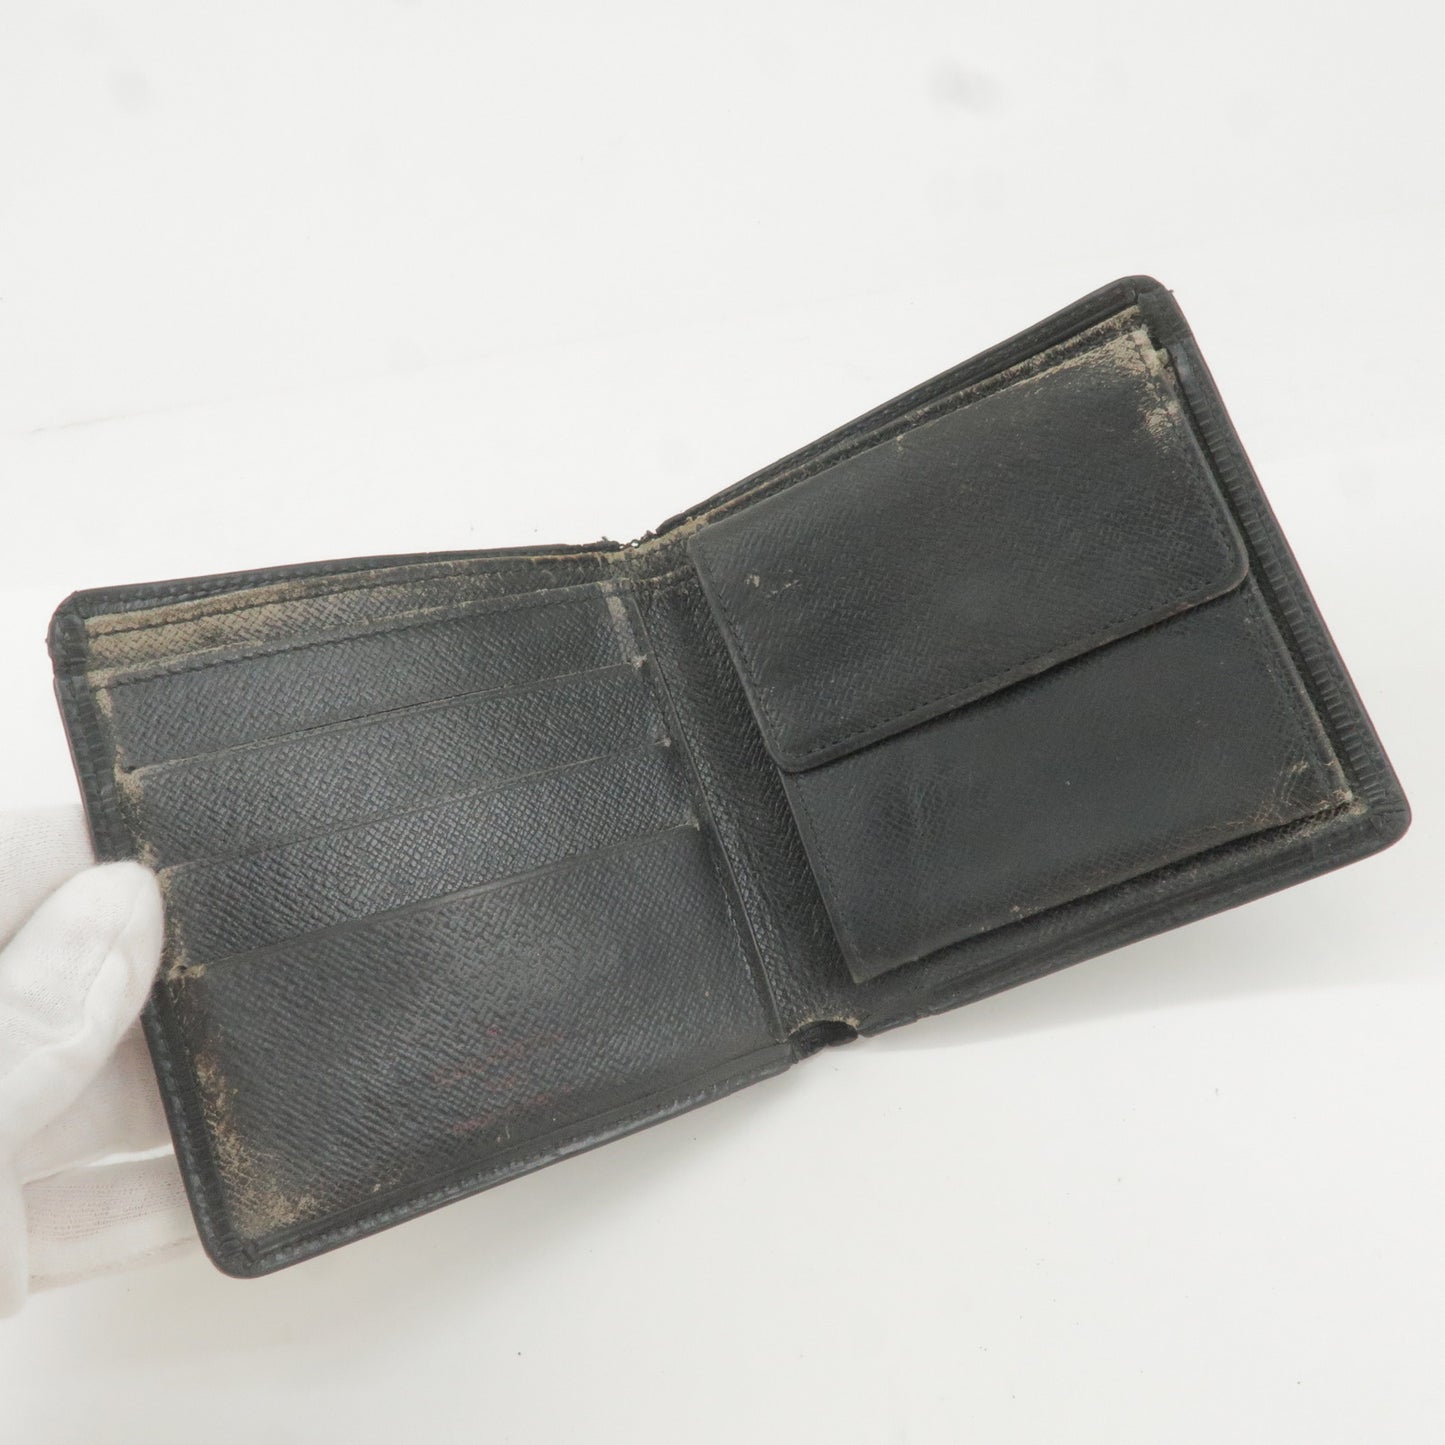 Louis Vuitton Epi Leather Set of 5 Wallets Bi-Fold Wallets